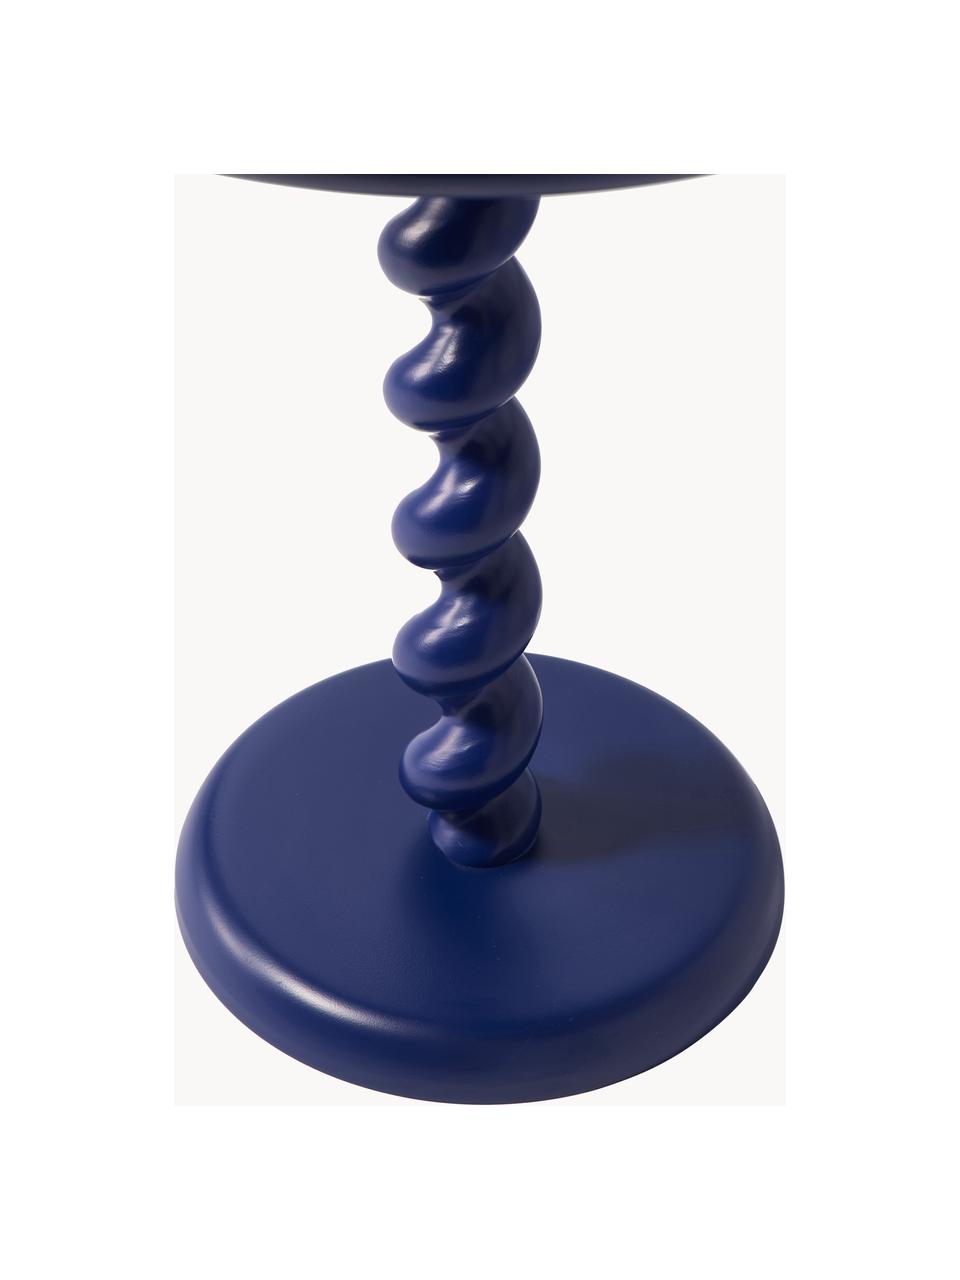 Stolik pomocniczy Twister, Aluminium malowane proszkowo, Ciemny niebieski, Ø 46 x W 56 cm